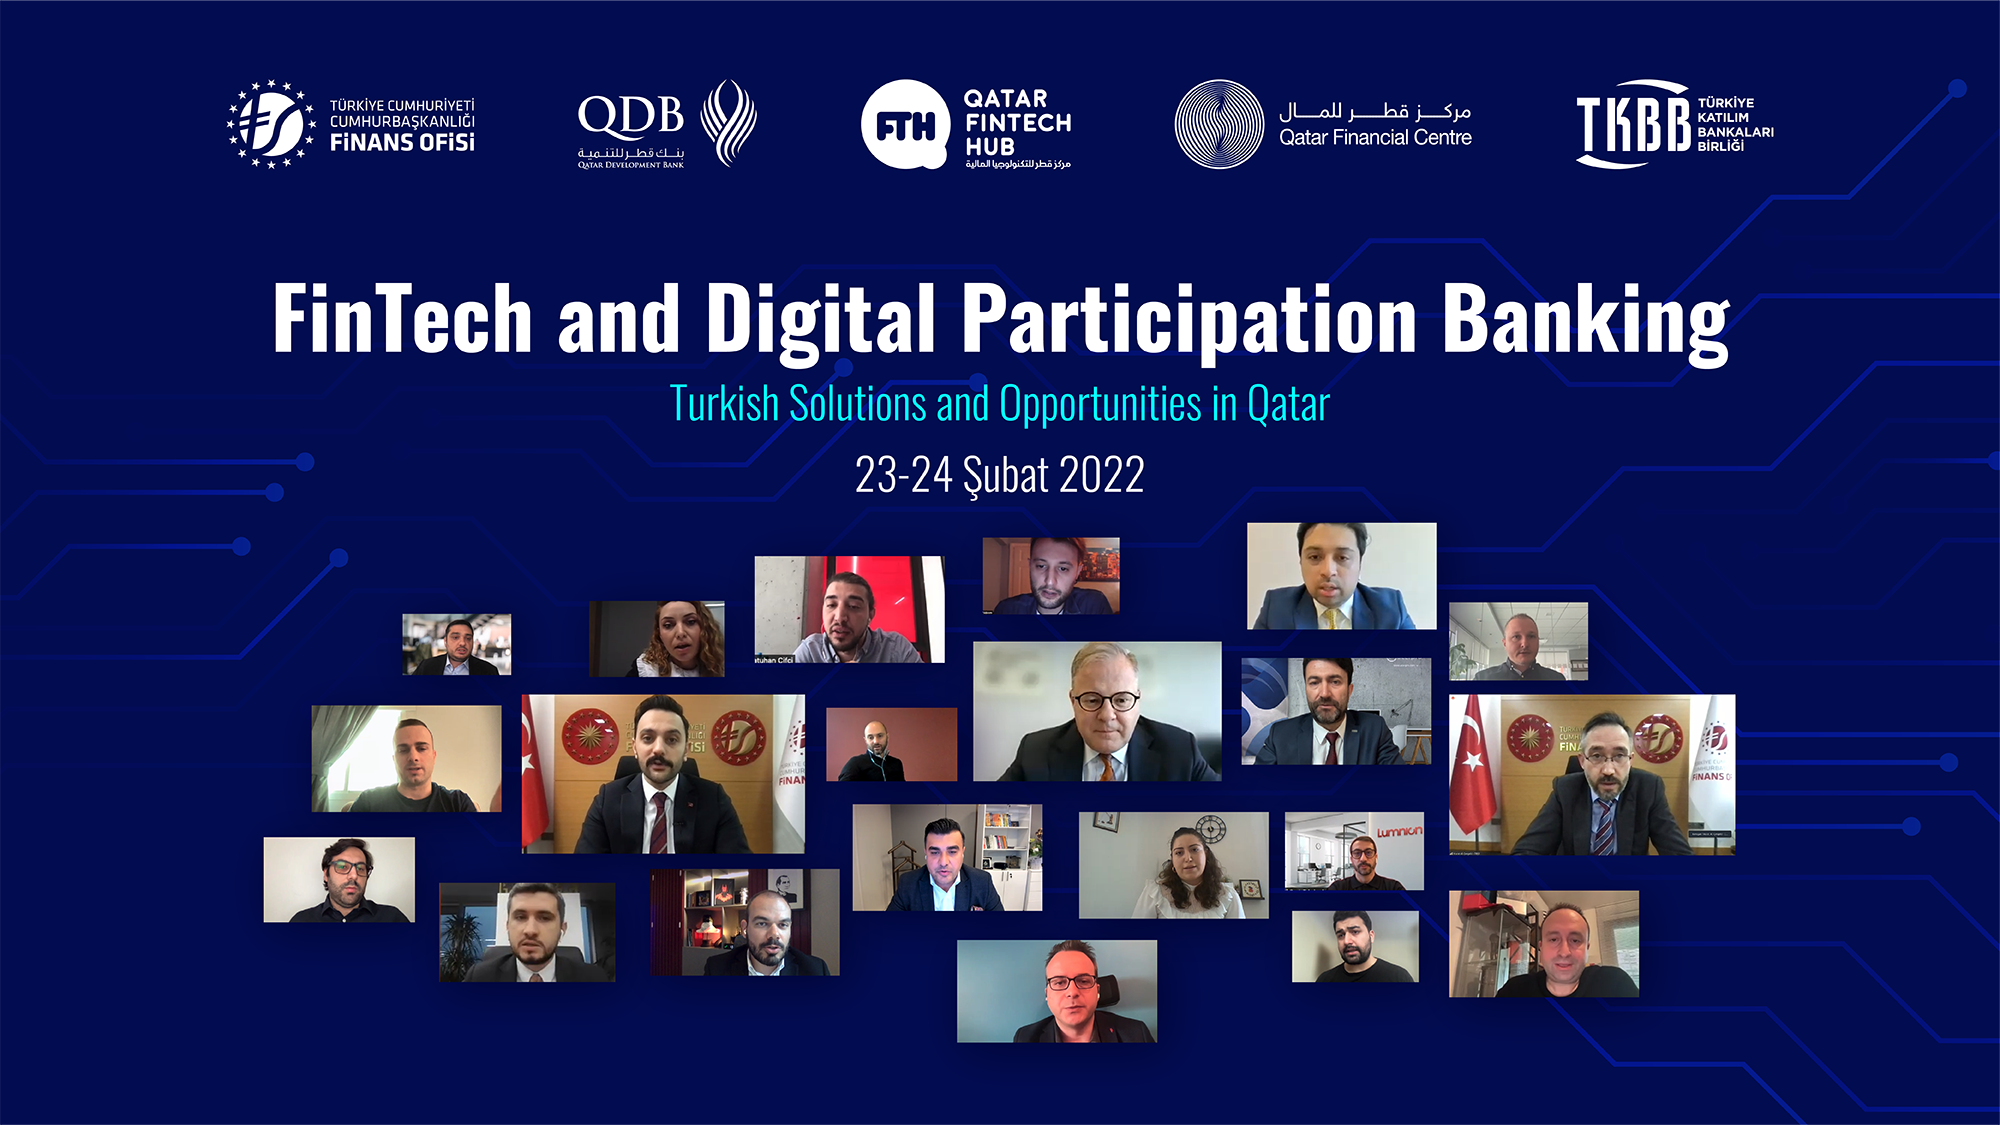 Katılım Bankaları ve Fintek Şirketleri Katarlı Yatırımcılarla Buluştu